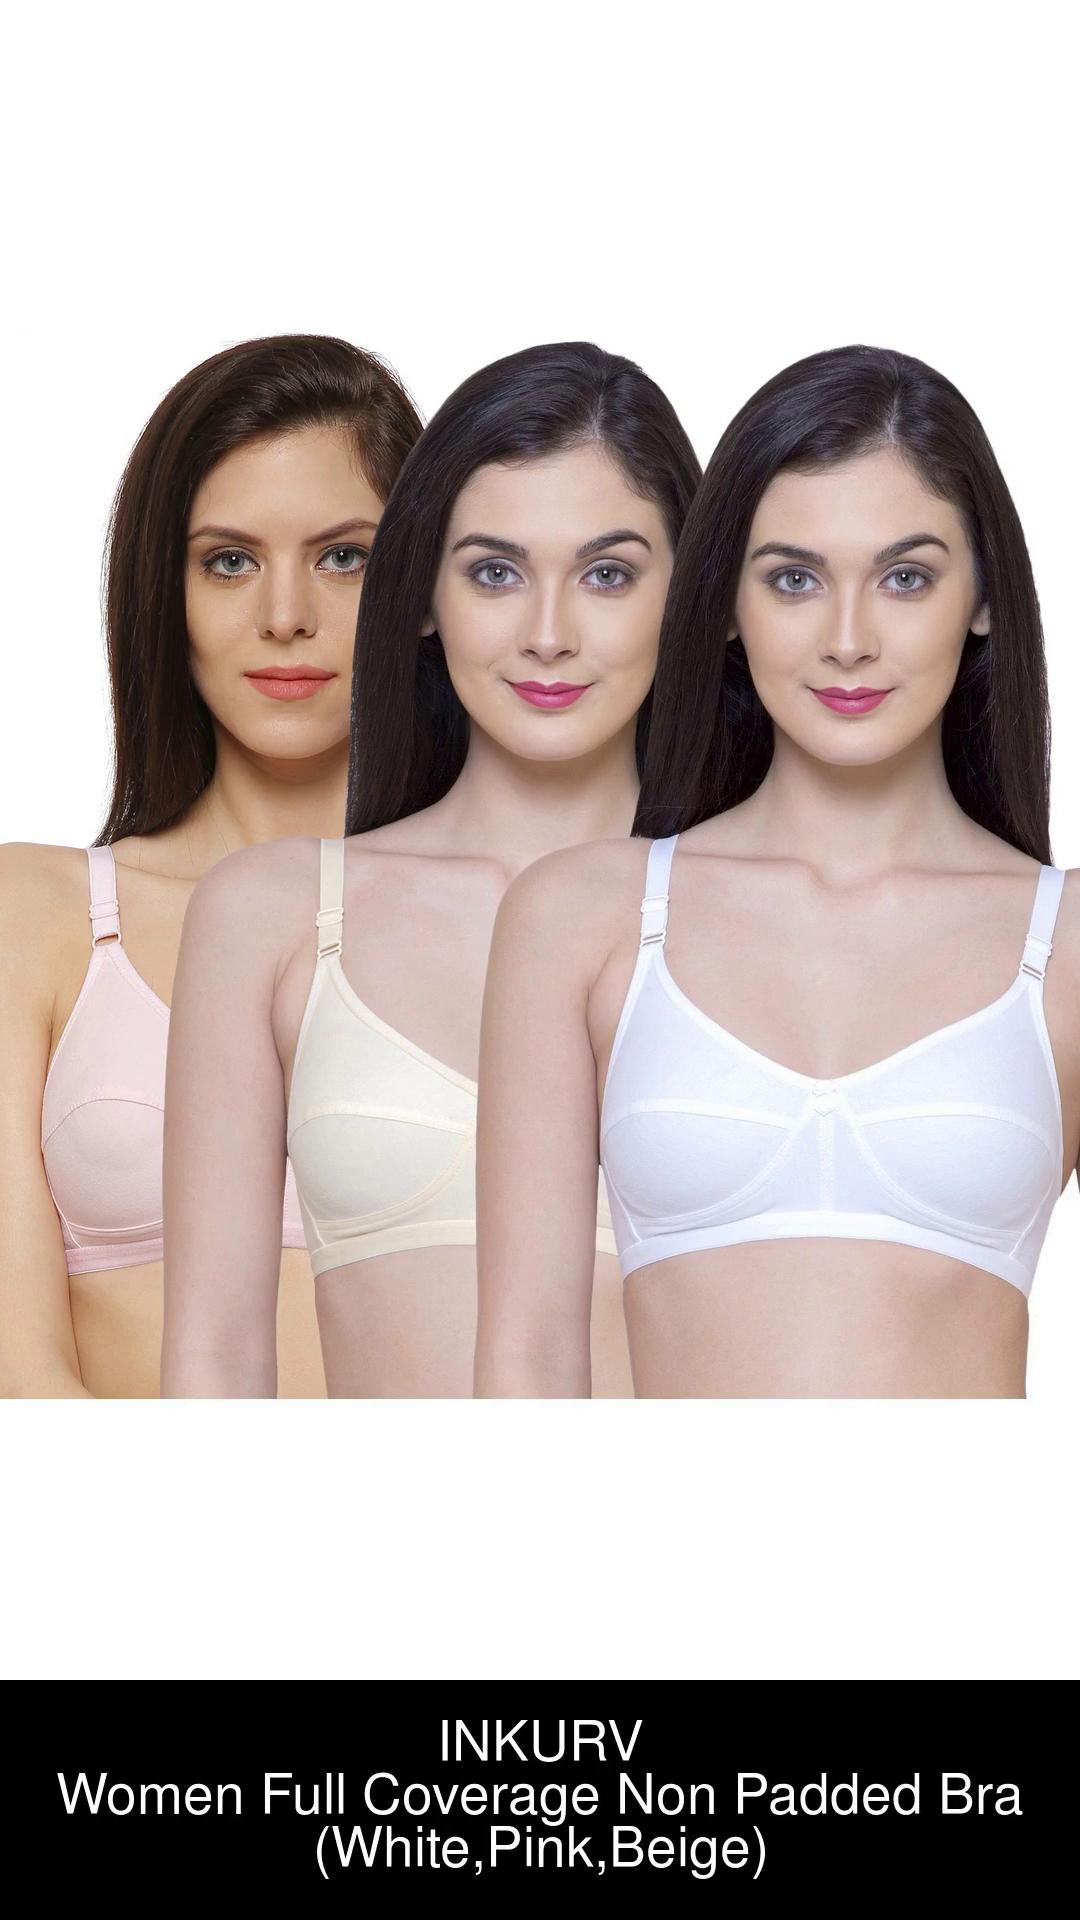 Buy White Bras for Women by INKURV Online